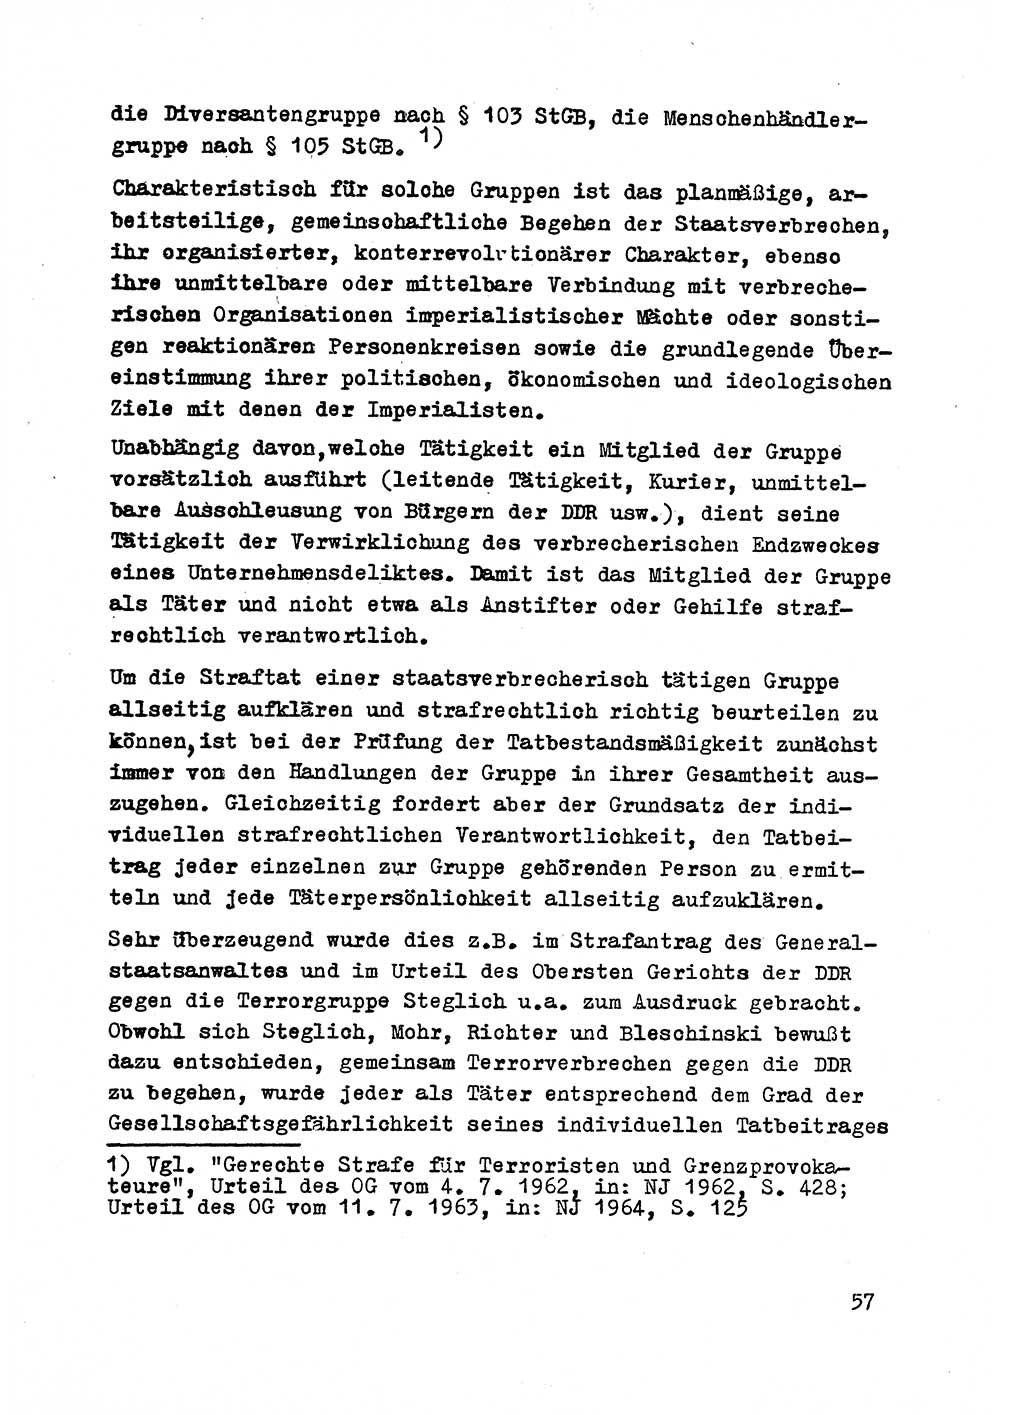 Strafrecht der DDR (Deutsche Demokratische Republik), Besonderer Teil, Lehrmaterial, Heft 2 1969, Seite 57 (Strafr. DDR BT Lehrmat. H. 2 1969, S. 57)